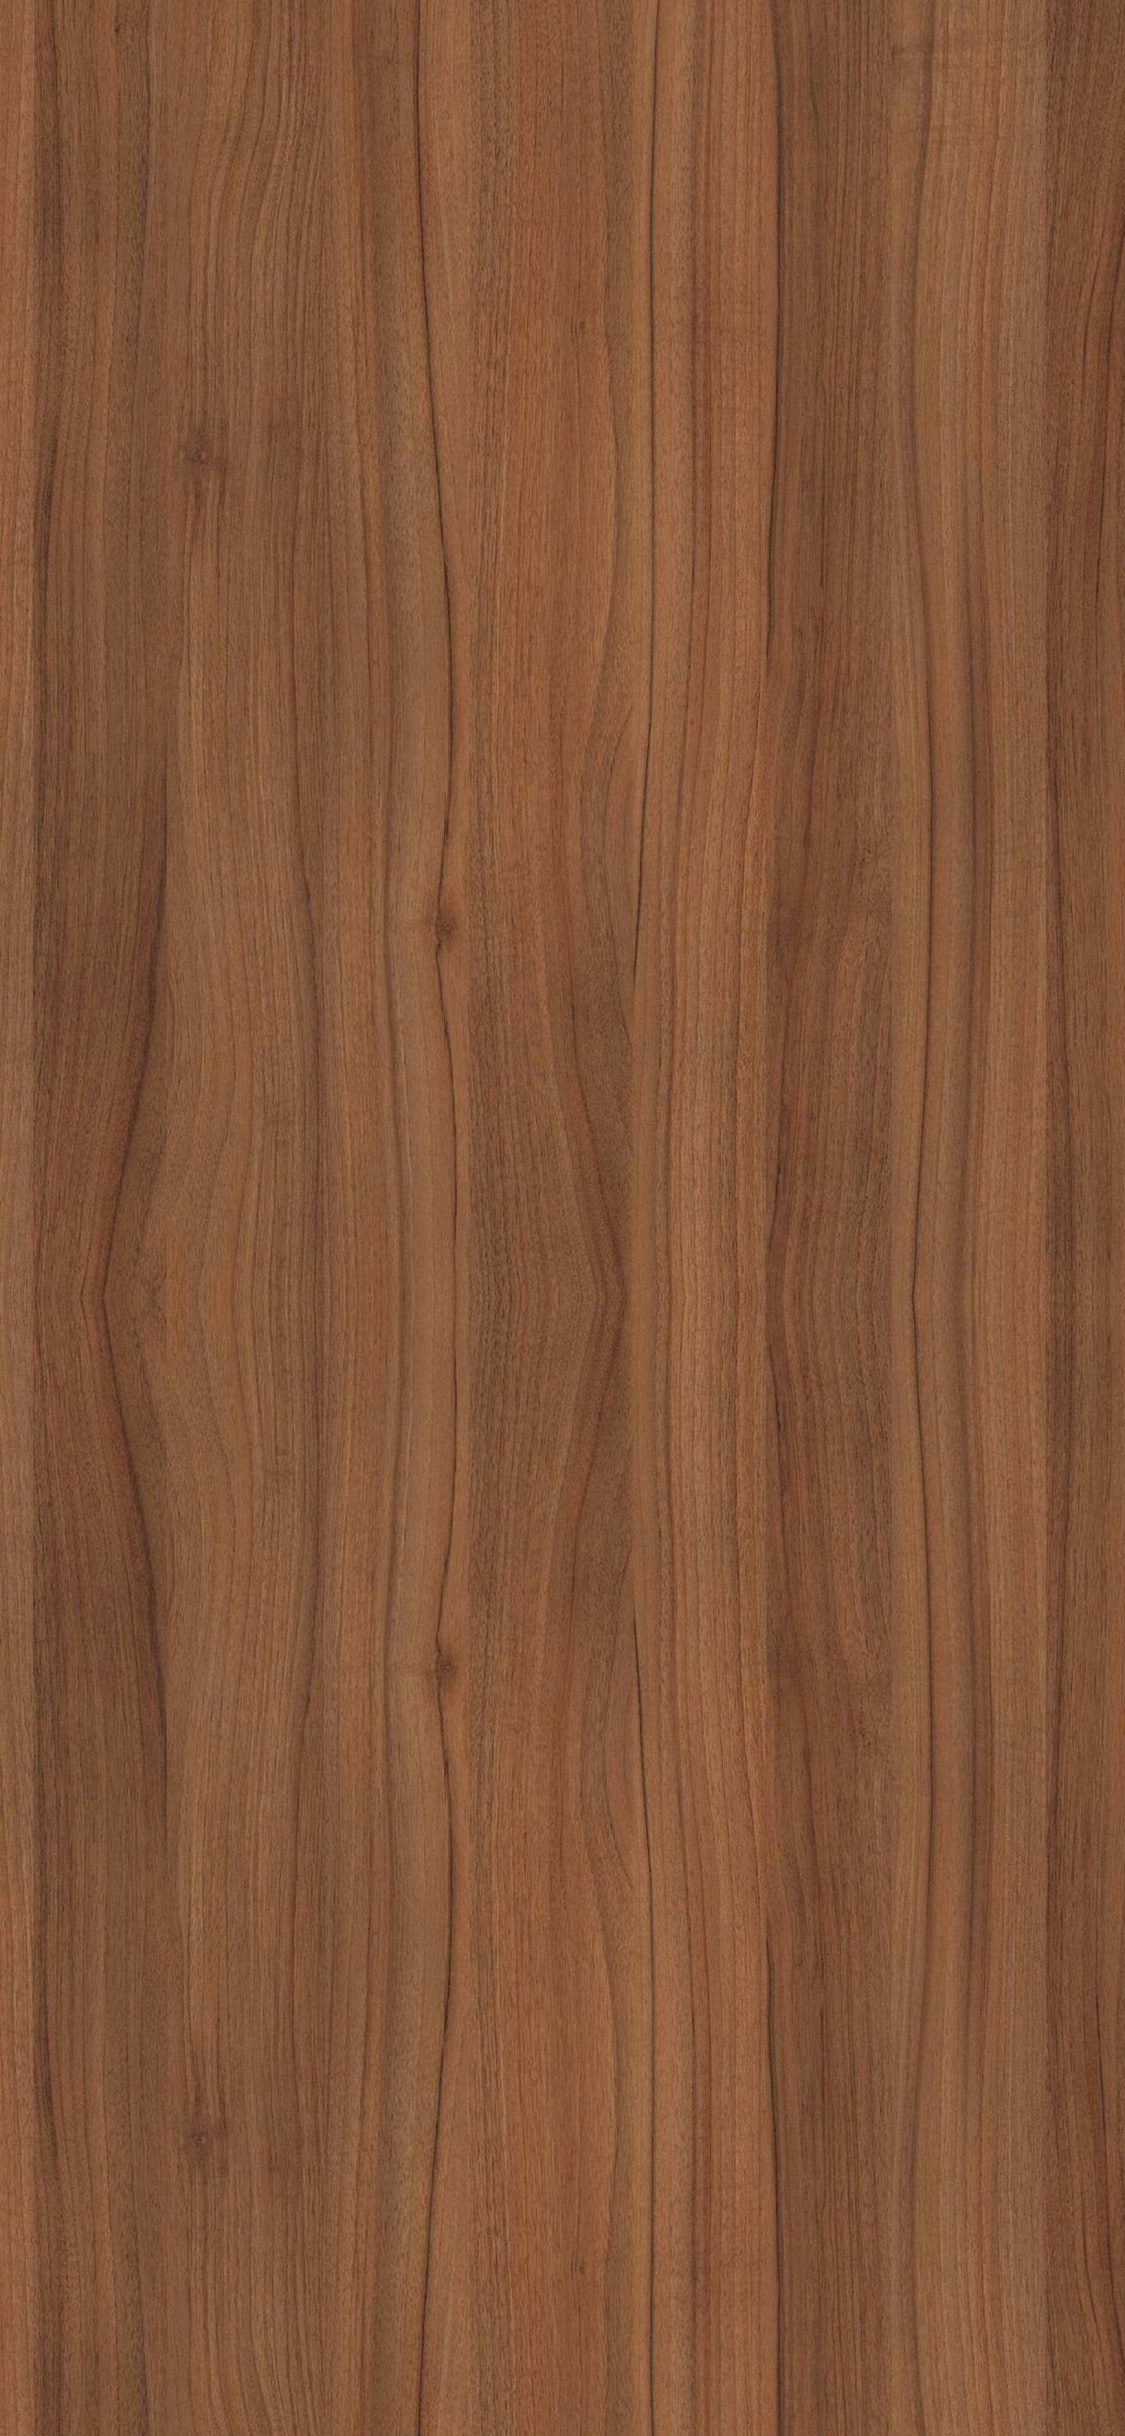 Brown Wooden Parquet Floor Tiles. Wallpaper in 1125x2436 Resolution